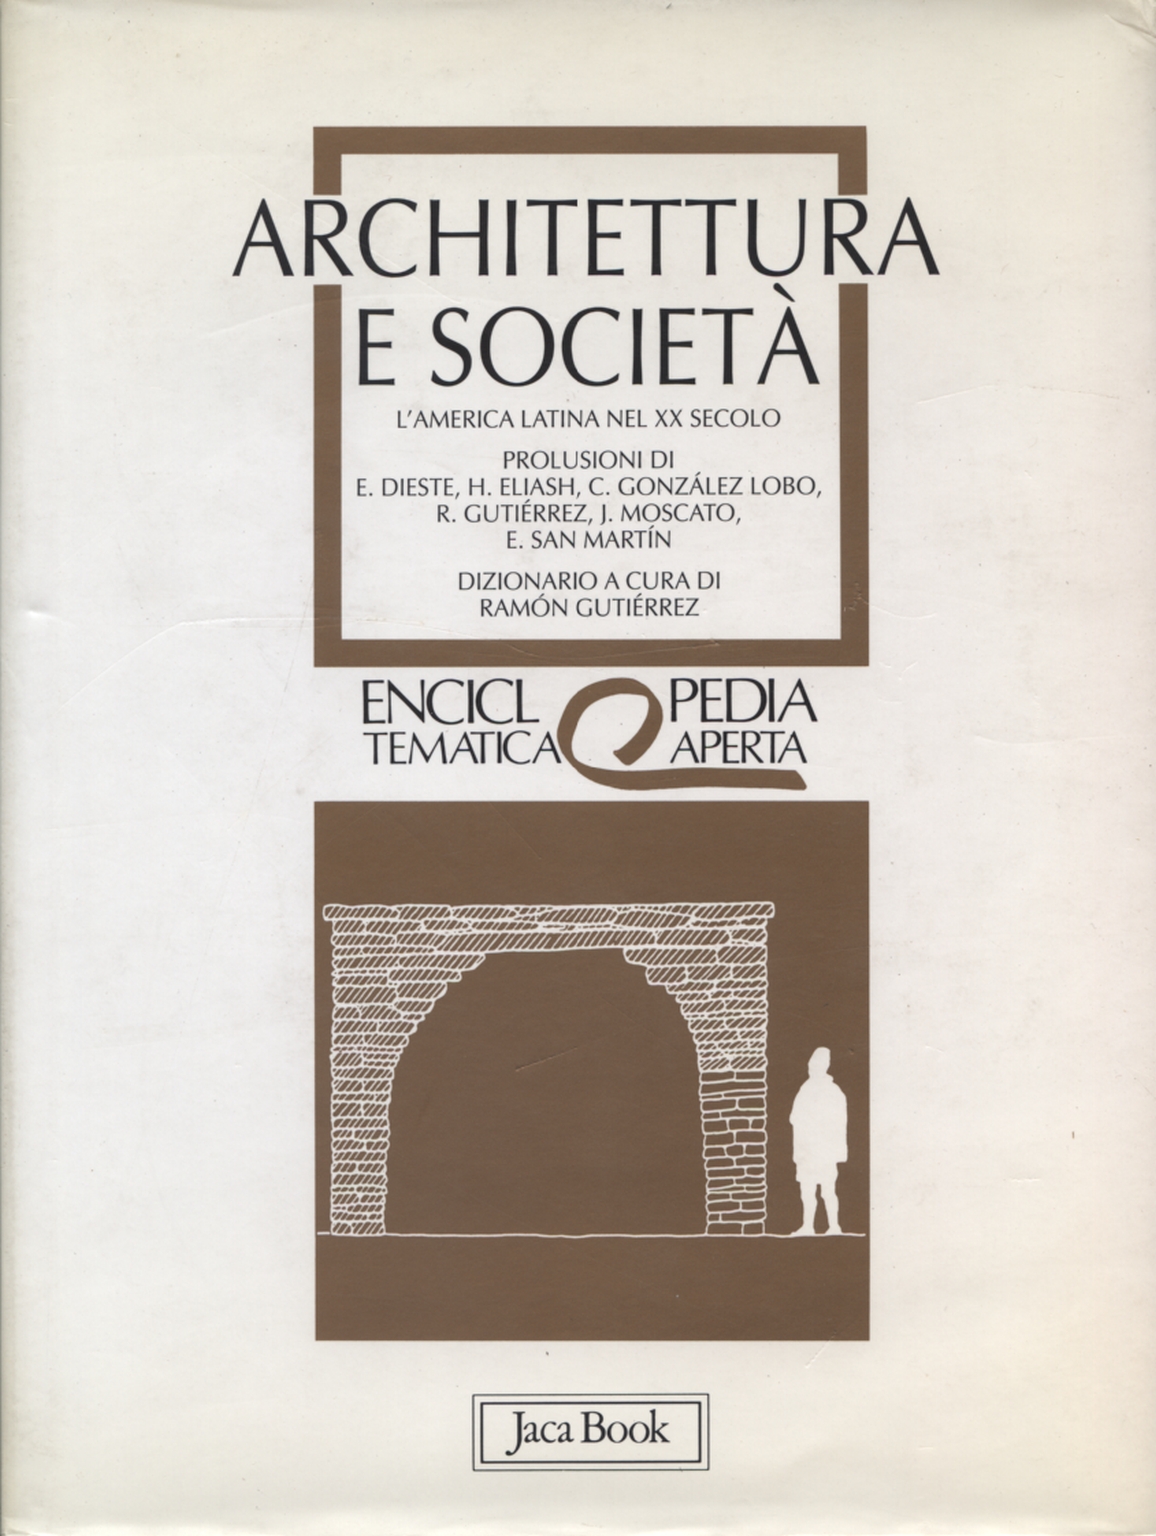 Architecture et société